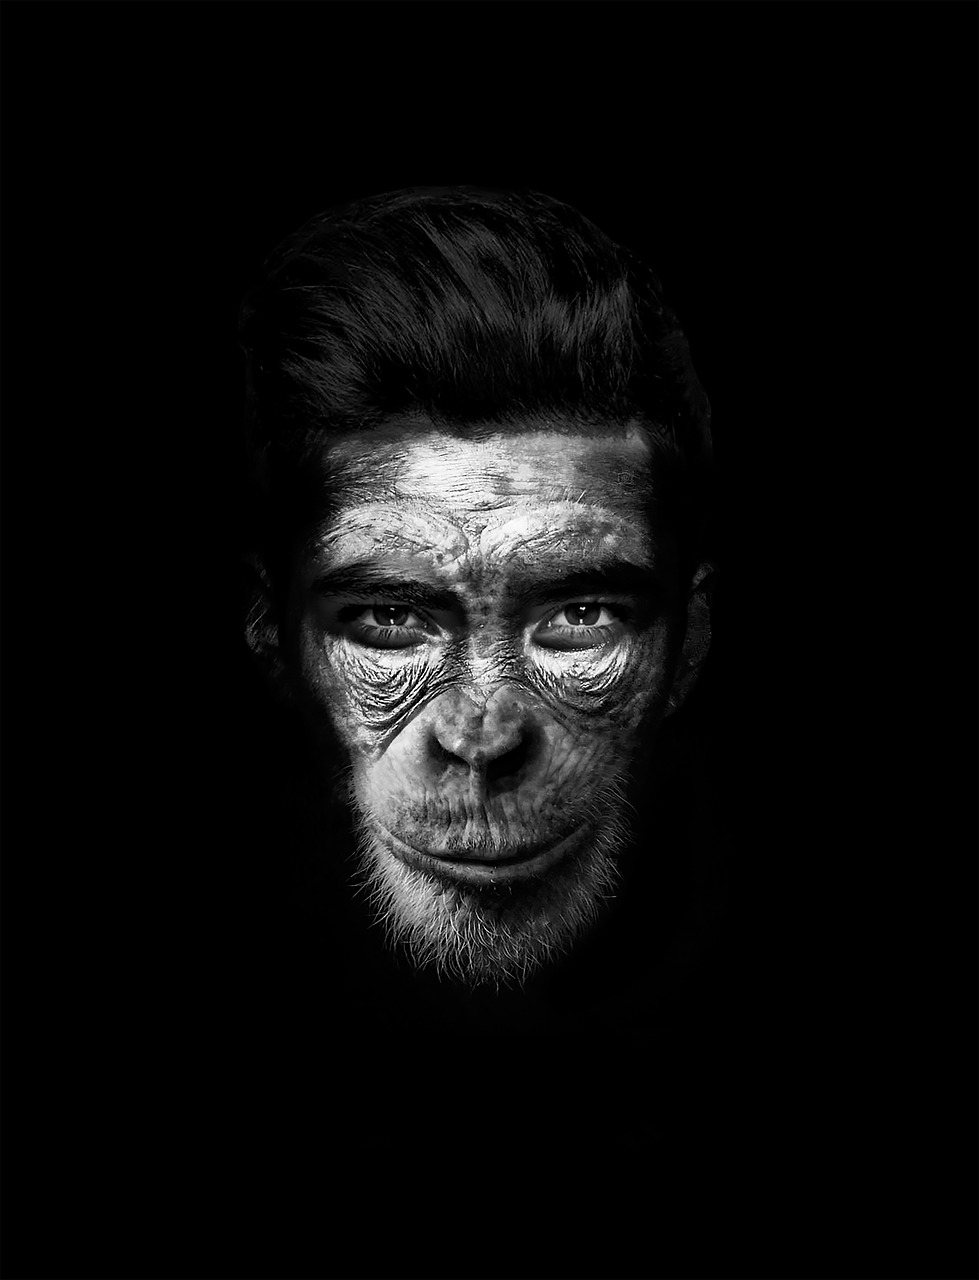 Image - man mono hombremono chimpanzee